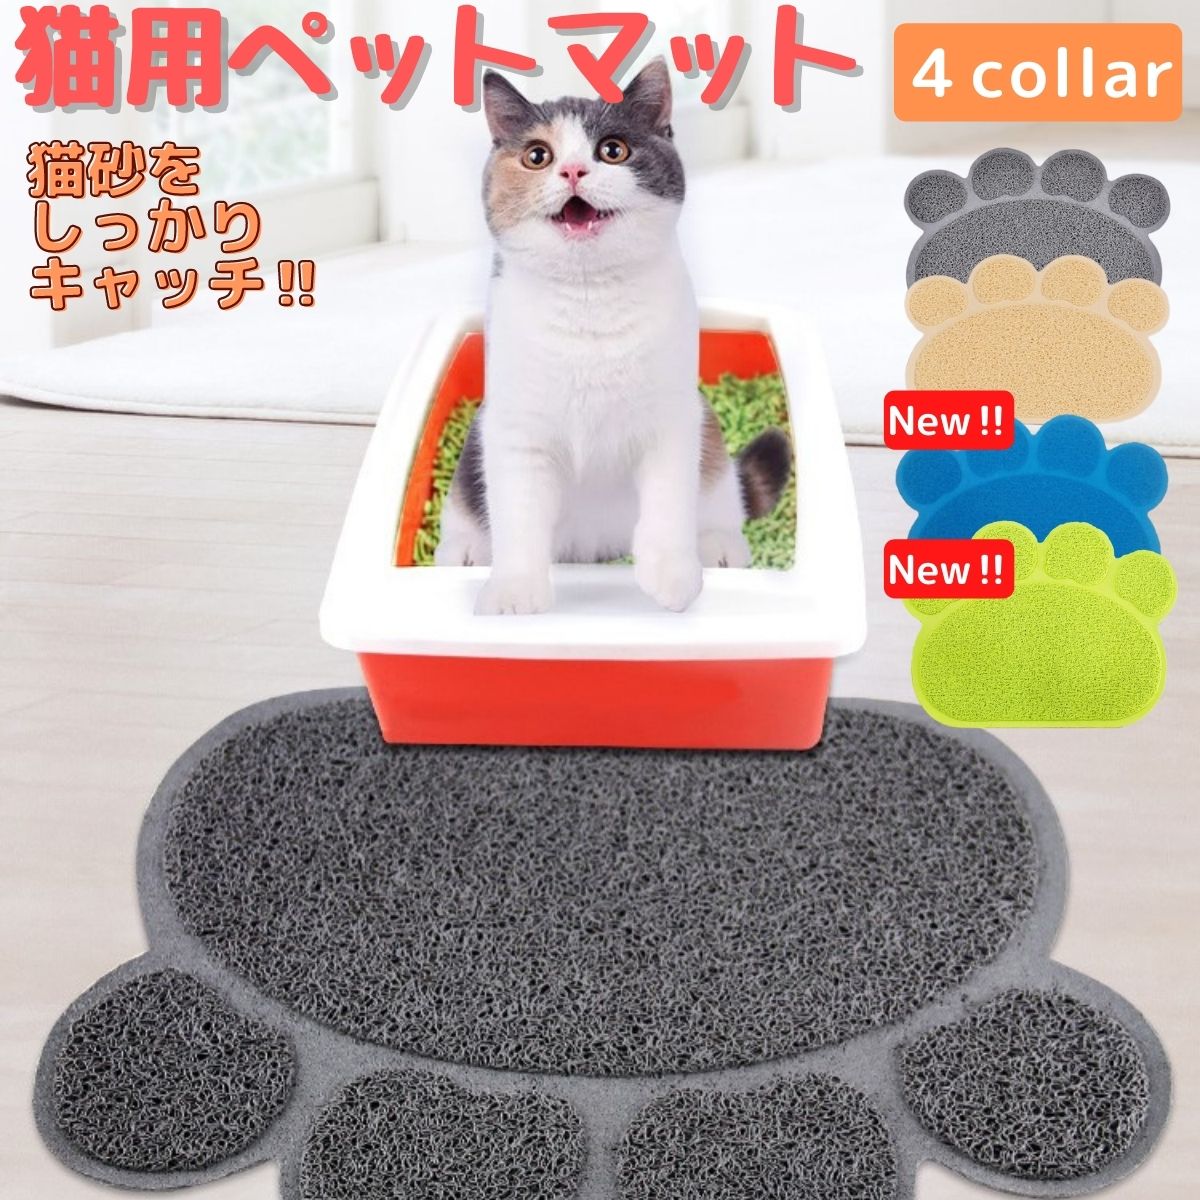  кошка песок коврик кошка туалет коврик кошка песок скол .. предотвращение коврик кошка. удаление песка коврик товары для домашних животных кошка товары 